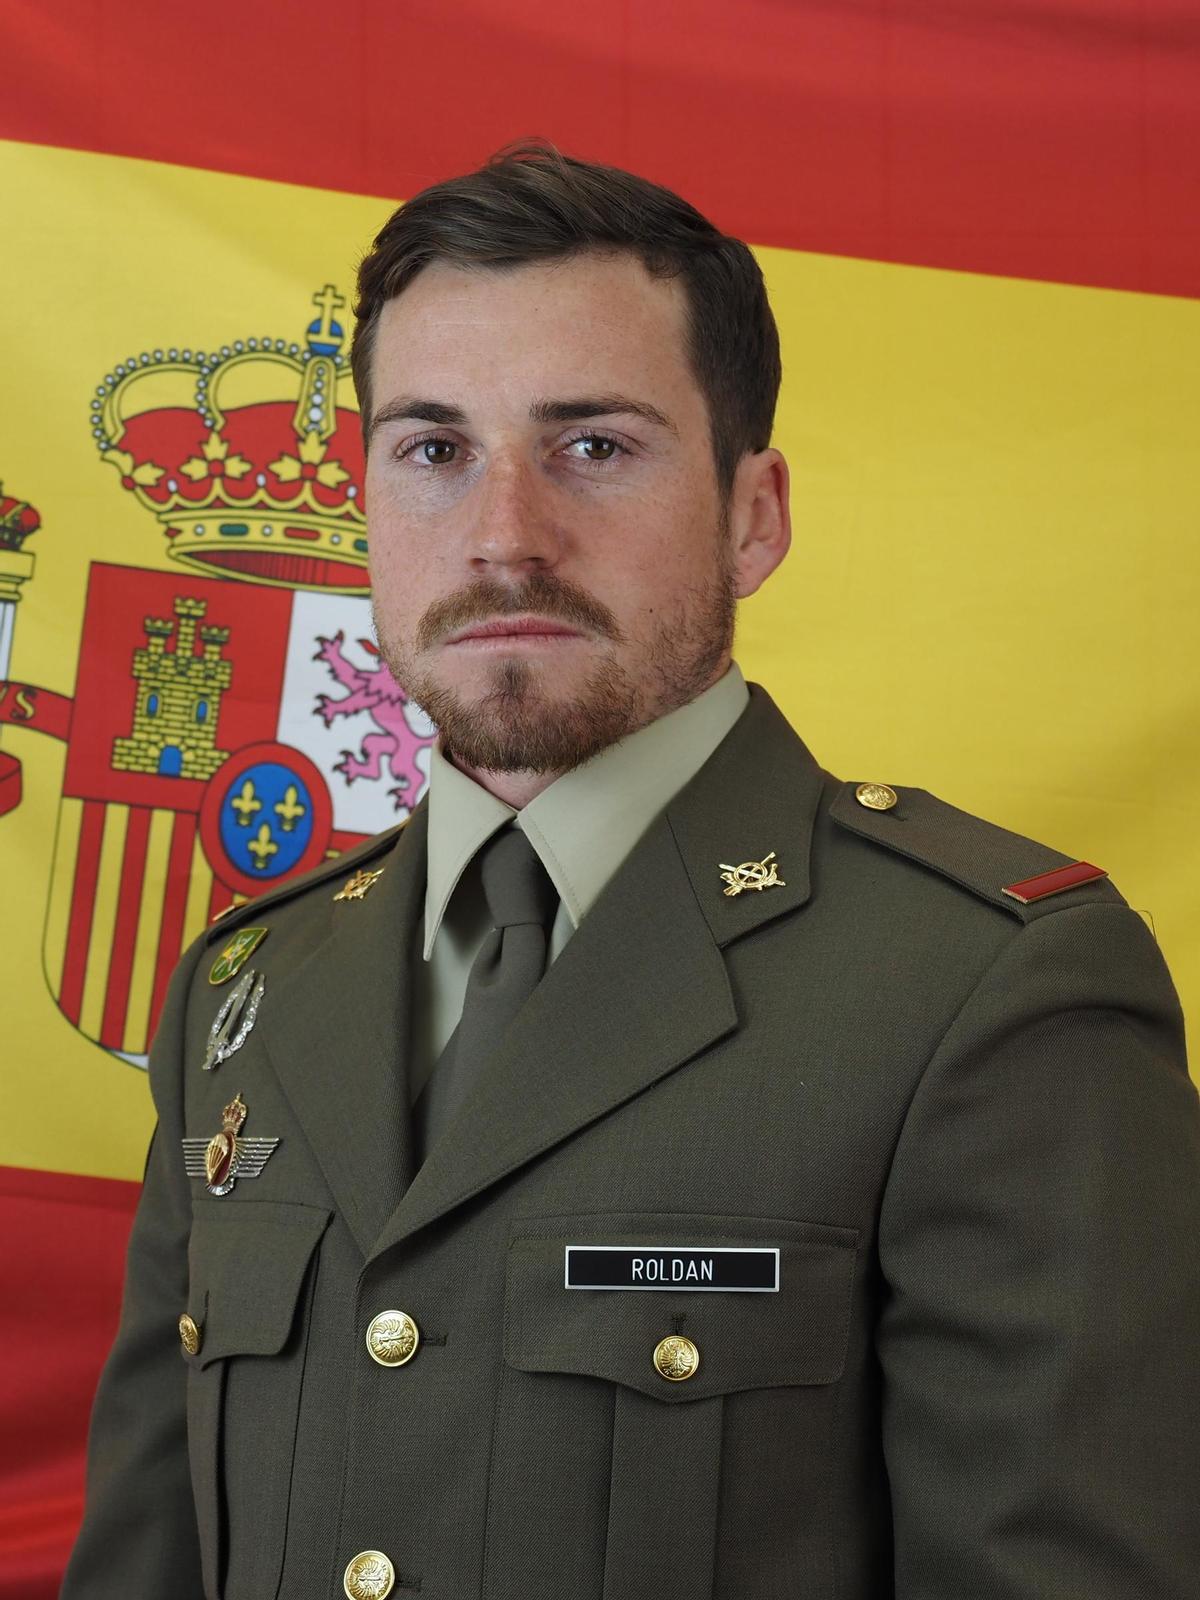 Adrián Roldán Marín, el &quot;boina verde&quot; fallecido en Alicante.